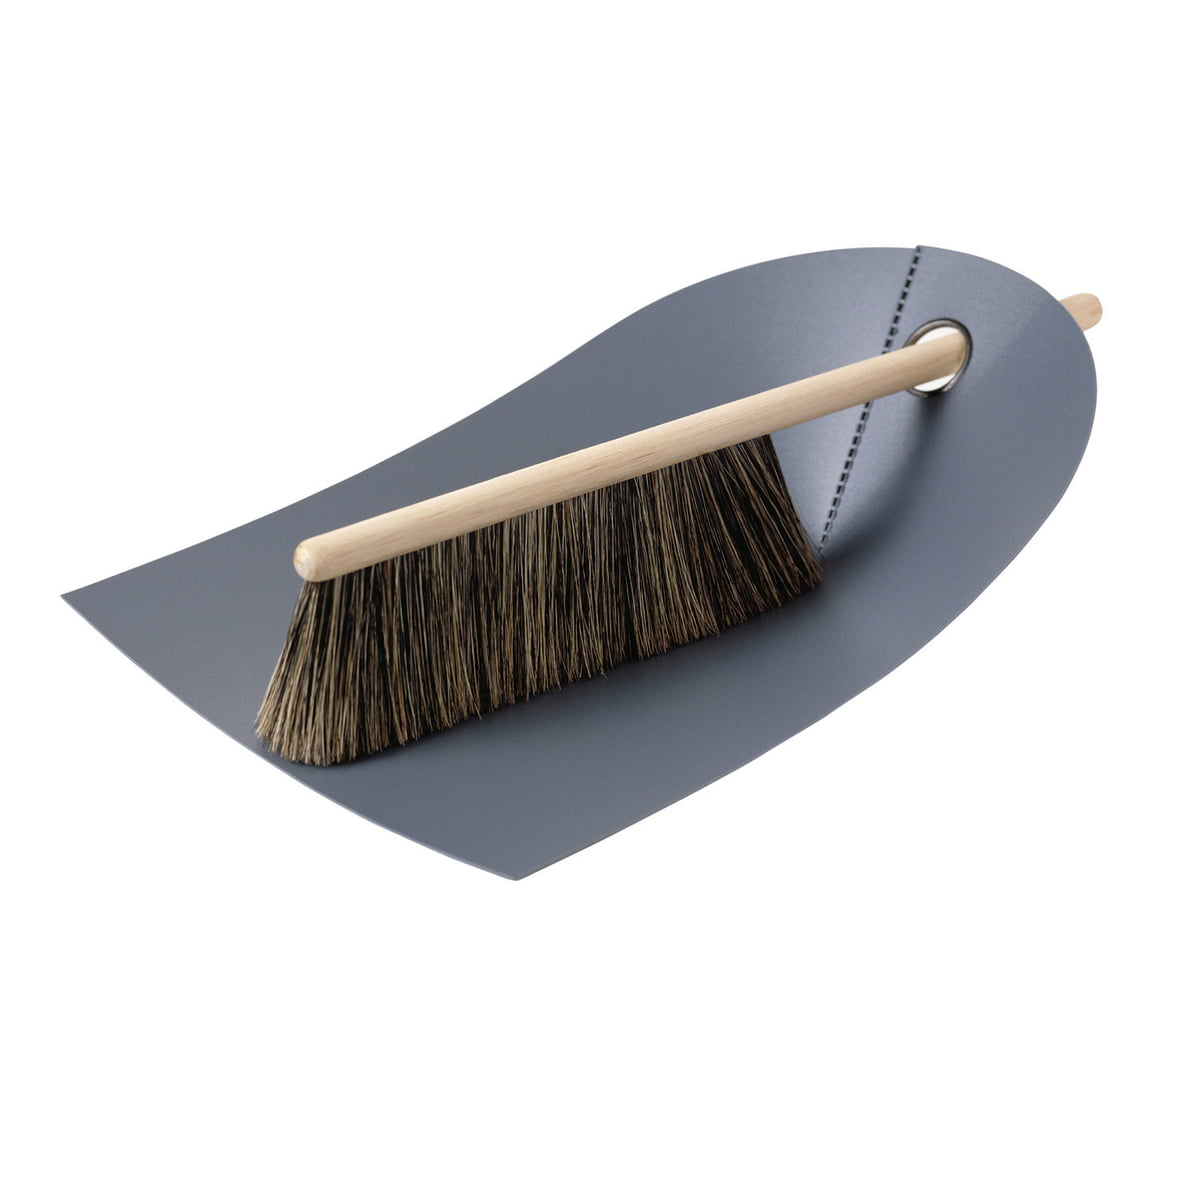 https://cdn.connox.de/m/100030/130226/media/normann-copenhagen/Handfeger-und-Kehrblech/Dustpan-and-broom-darkgrey.jpg